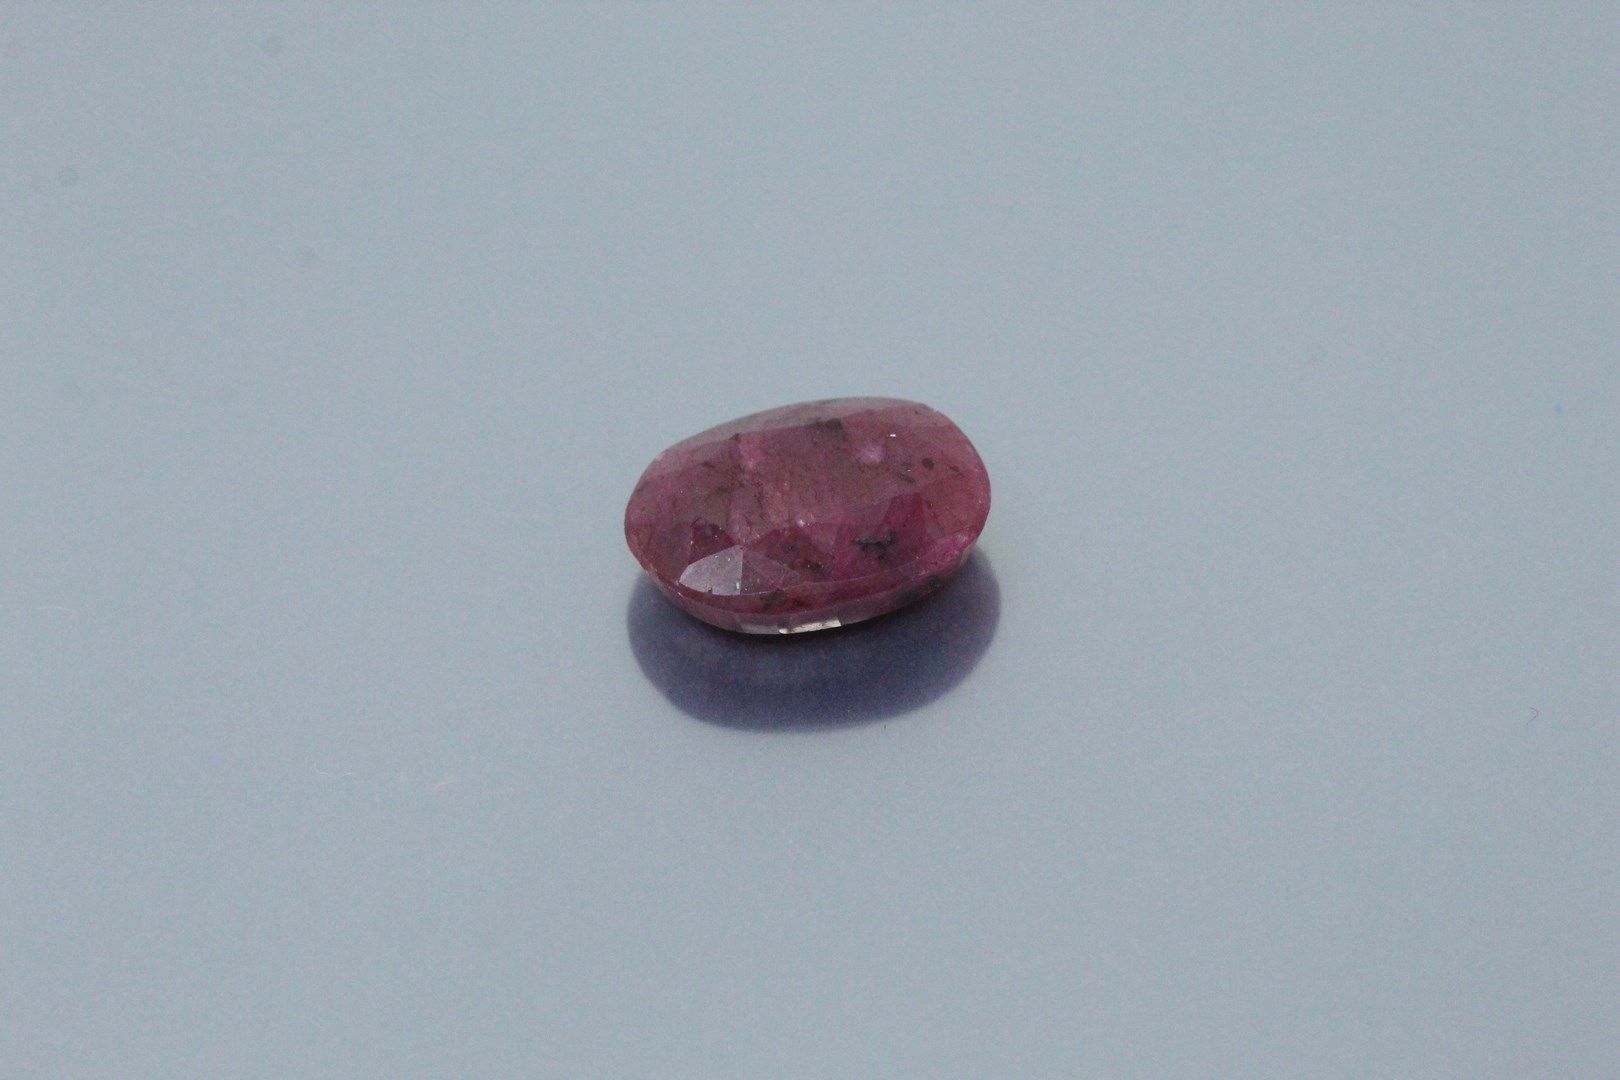 Null 椭圆形红宝石（根），纸质。

伴随着IDT证书，表明治疗方法。

重量：16.16克拉。